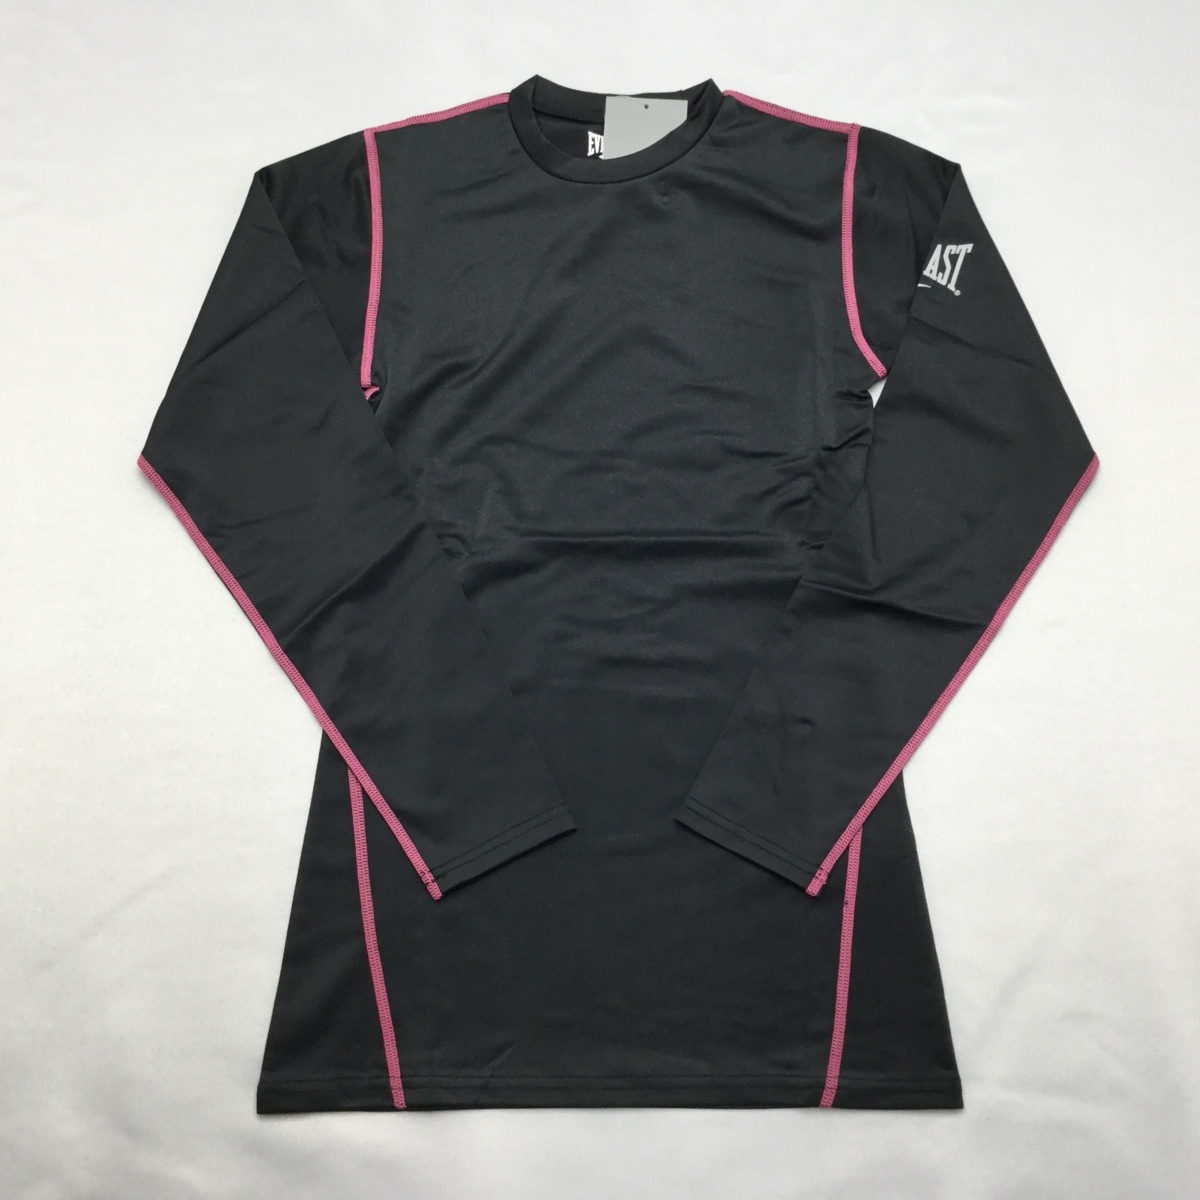 [ бесплатная доставка ][ новый товар ]EVERLAST женский компрессионный рубашка ( круглый вырез ) M черный * rose *19051